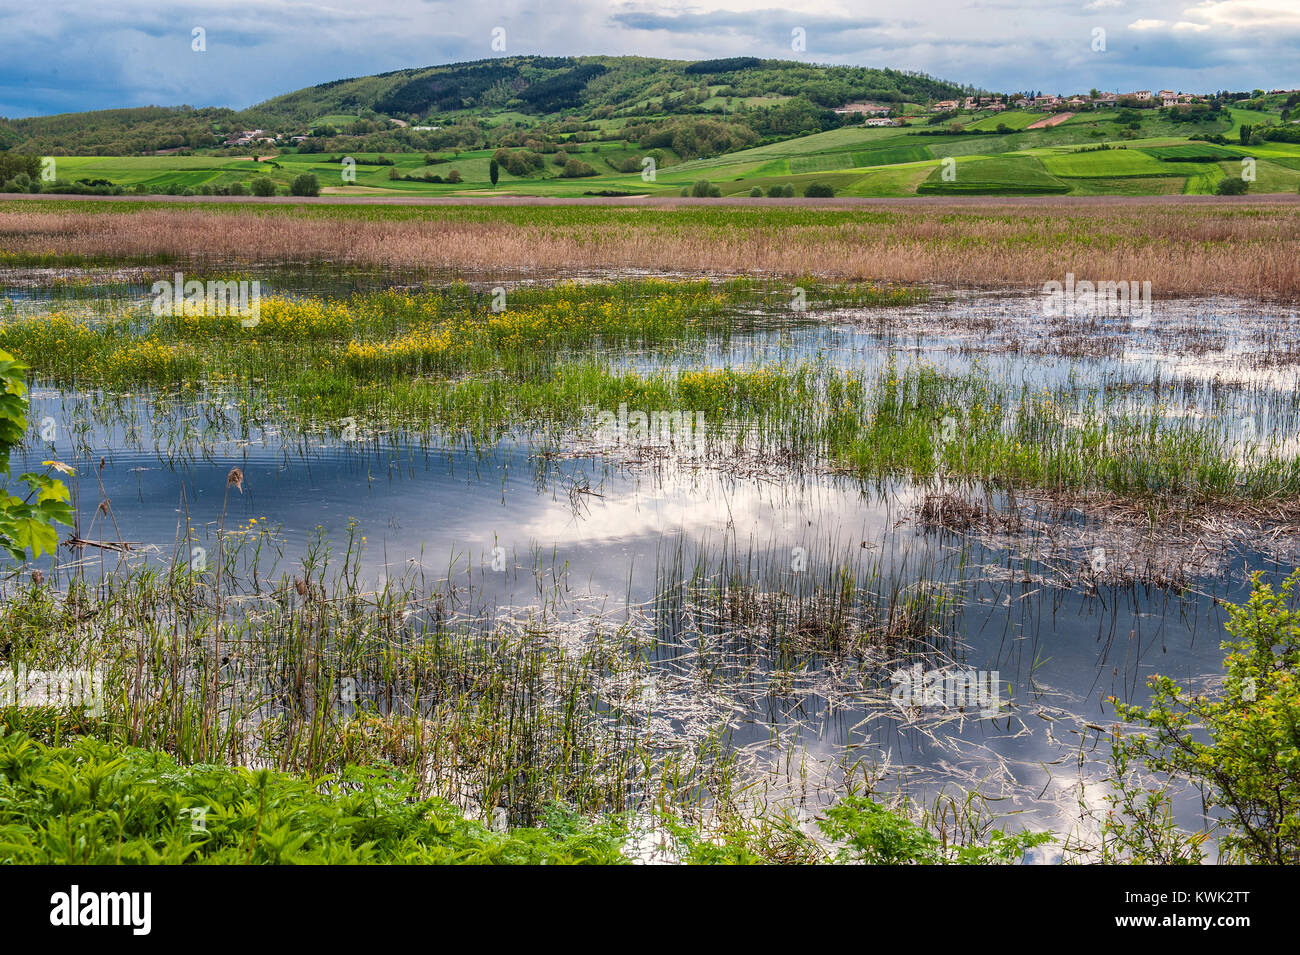 Sumpf von Colfiorito, Perugia, Umbrien. Umbrien das grüne Herz Italiens. Die colfiorito Sumpf ist eine Grünfläche mit geschützten natürlichen Oase mit seltenen Vögeln Stockfoto